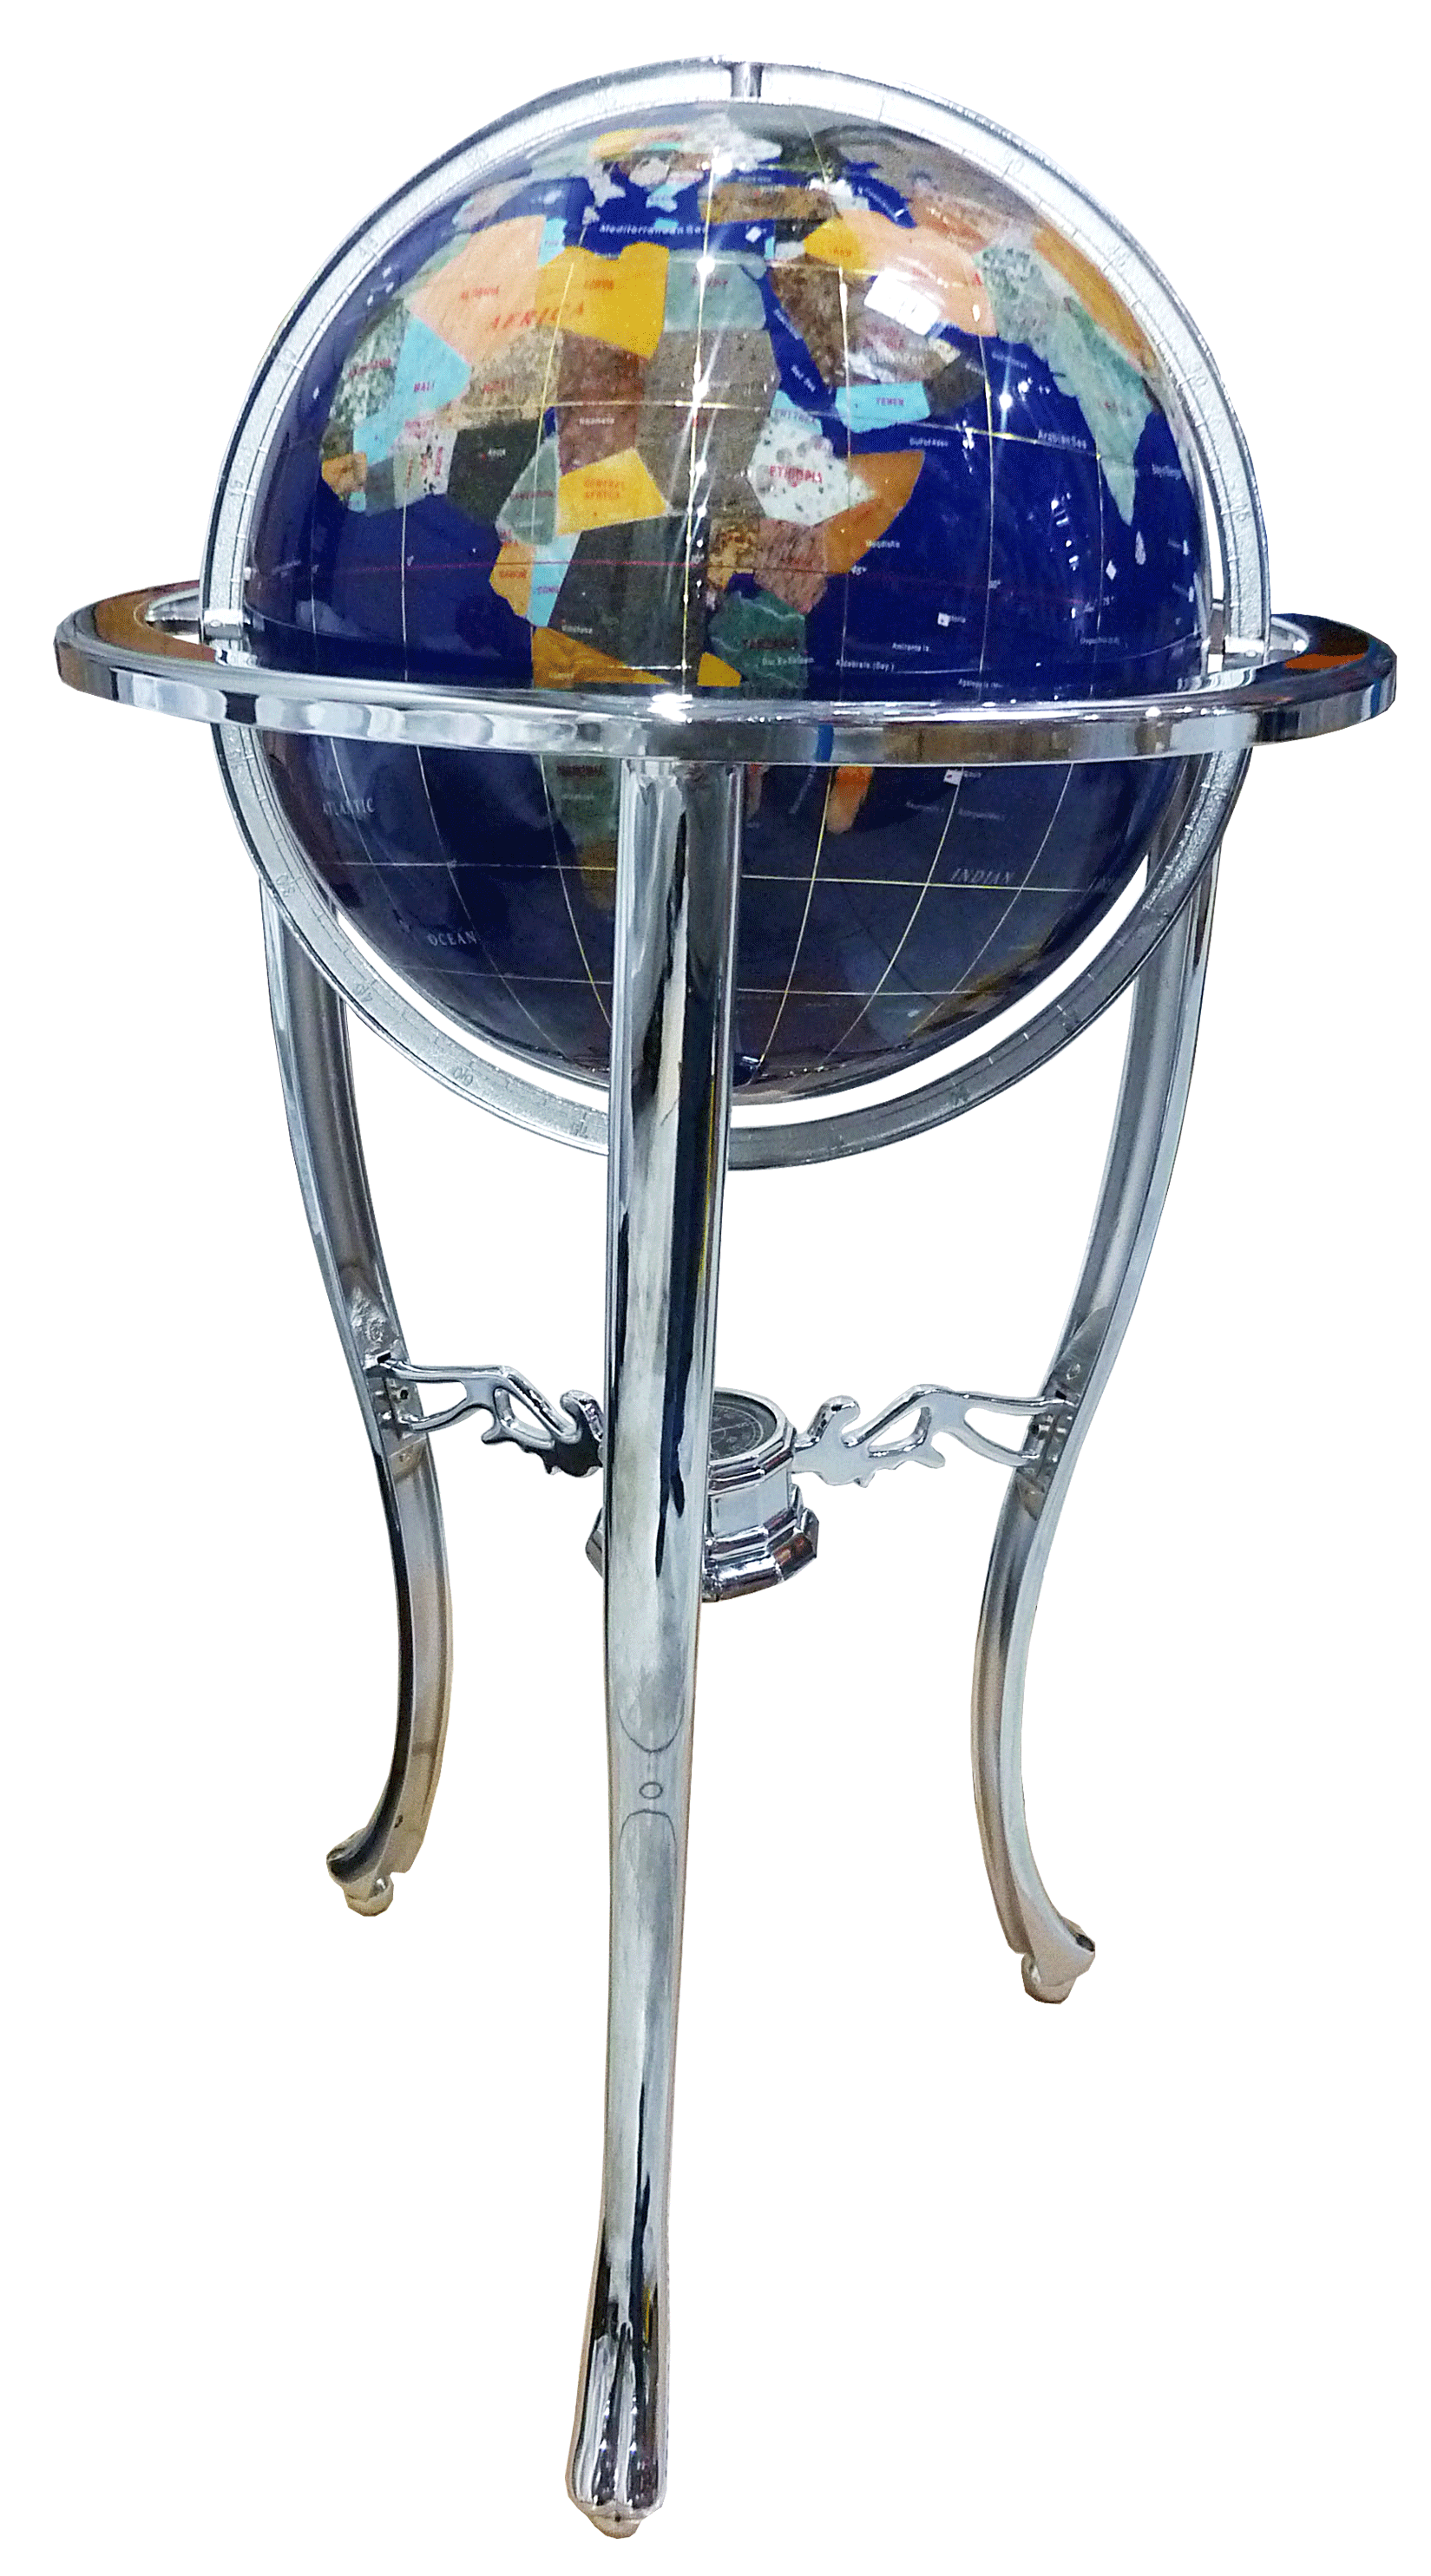 Gemstone globe on floor 3-Legs stand white chrome finish 33 cm diameter blue ocean